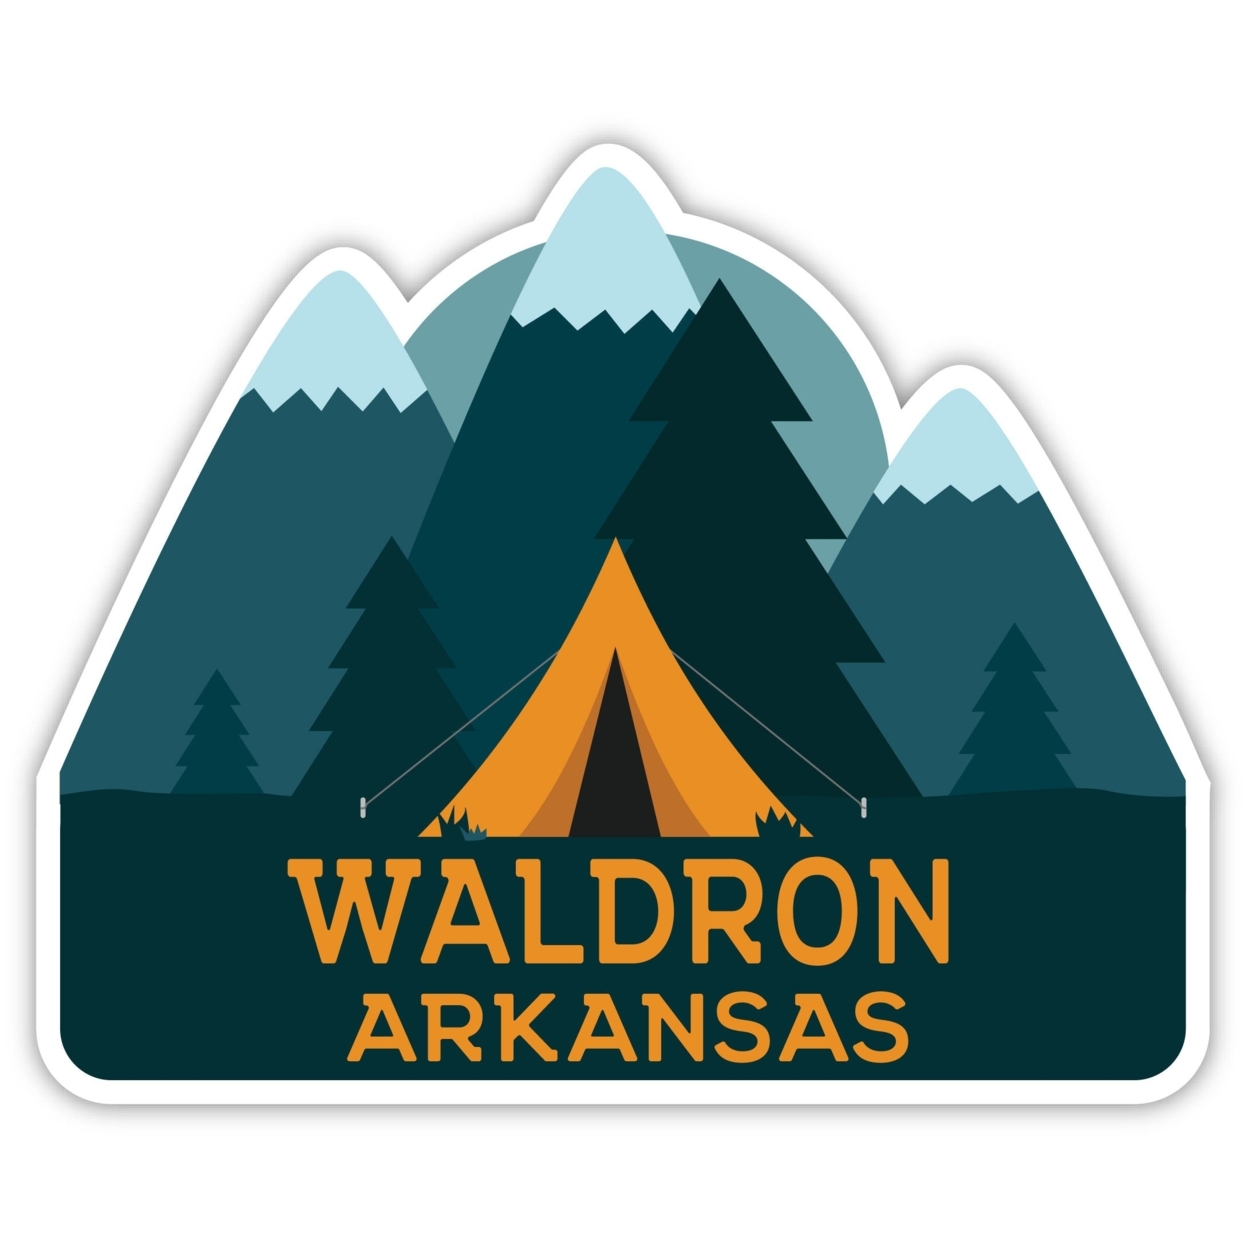 Waldron Arkansas Souvenir Decorative Stickers (Choose Theme And Size) - Single Unit, 4-Inch, Tent